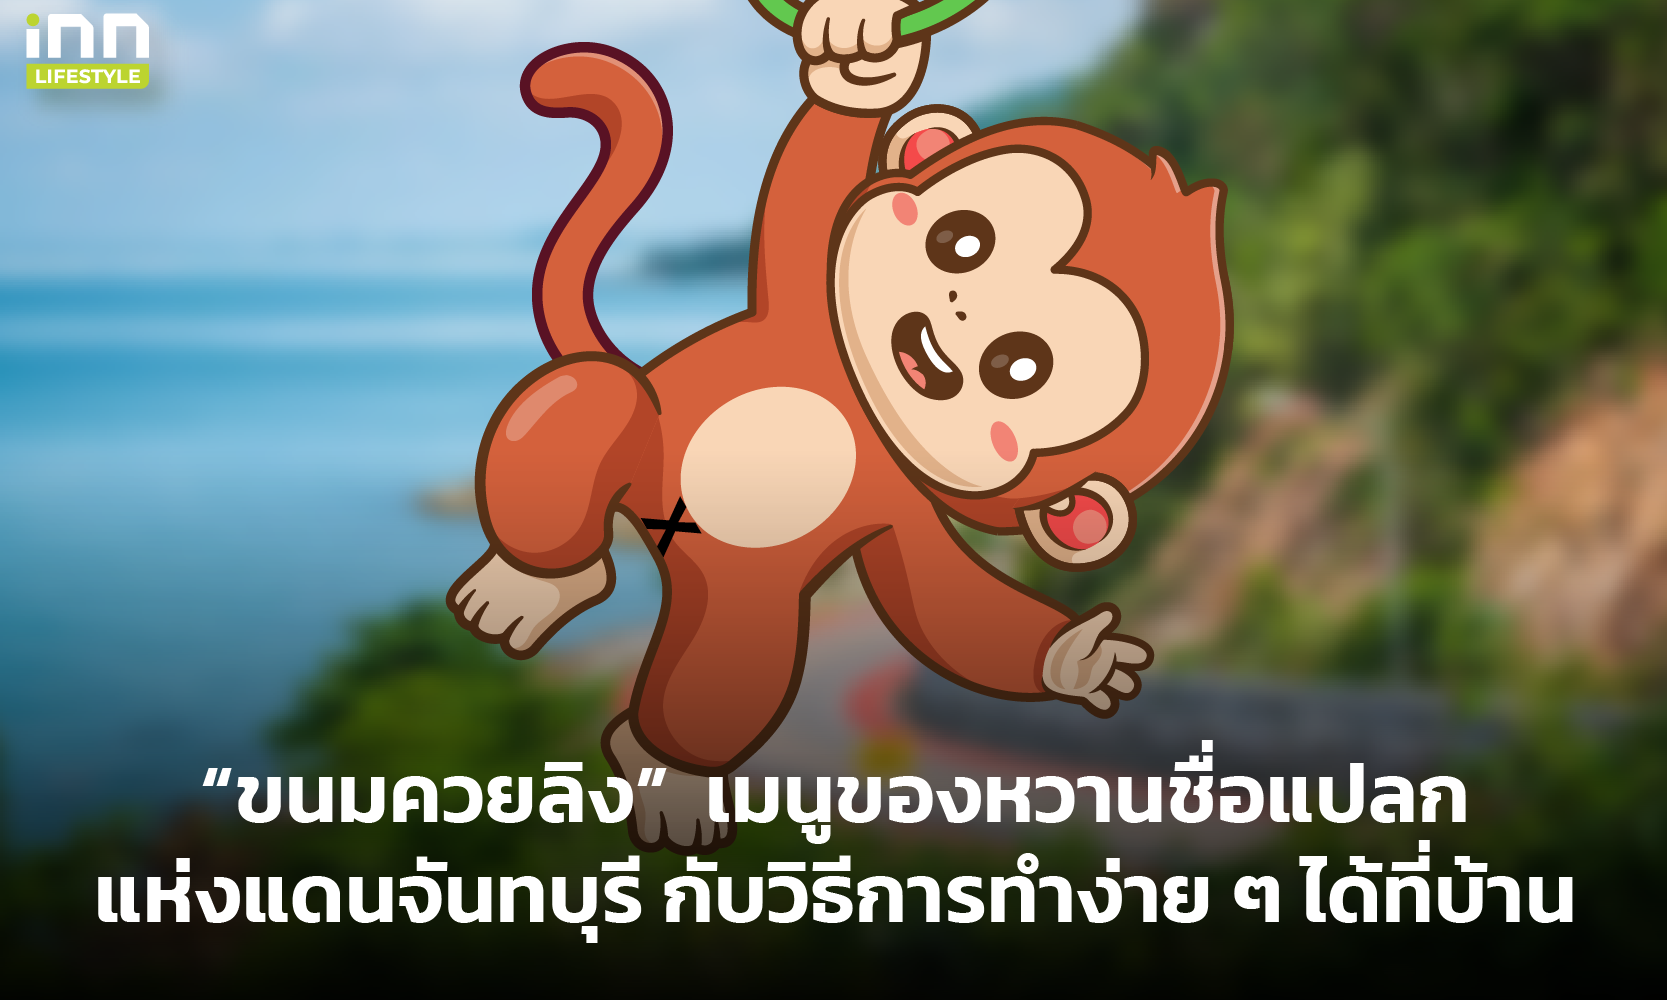 “ขนมควยลิง” เมนูของหวานชื่อแปลกแห่งแดนจันทบุรี กับวิธีการทำง่าย ๆ ได้ที่บ้าน